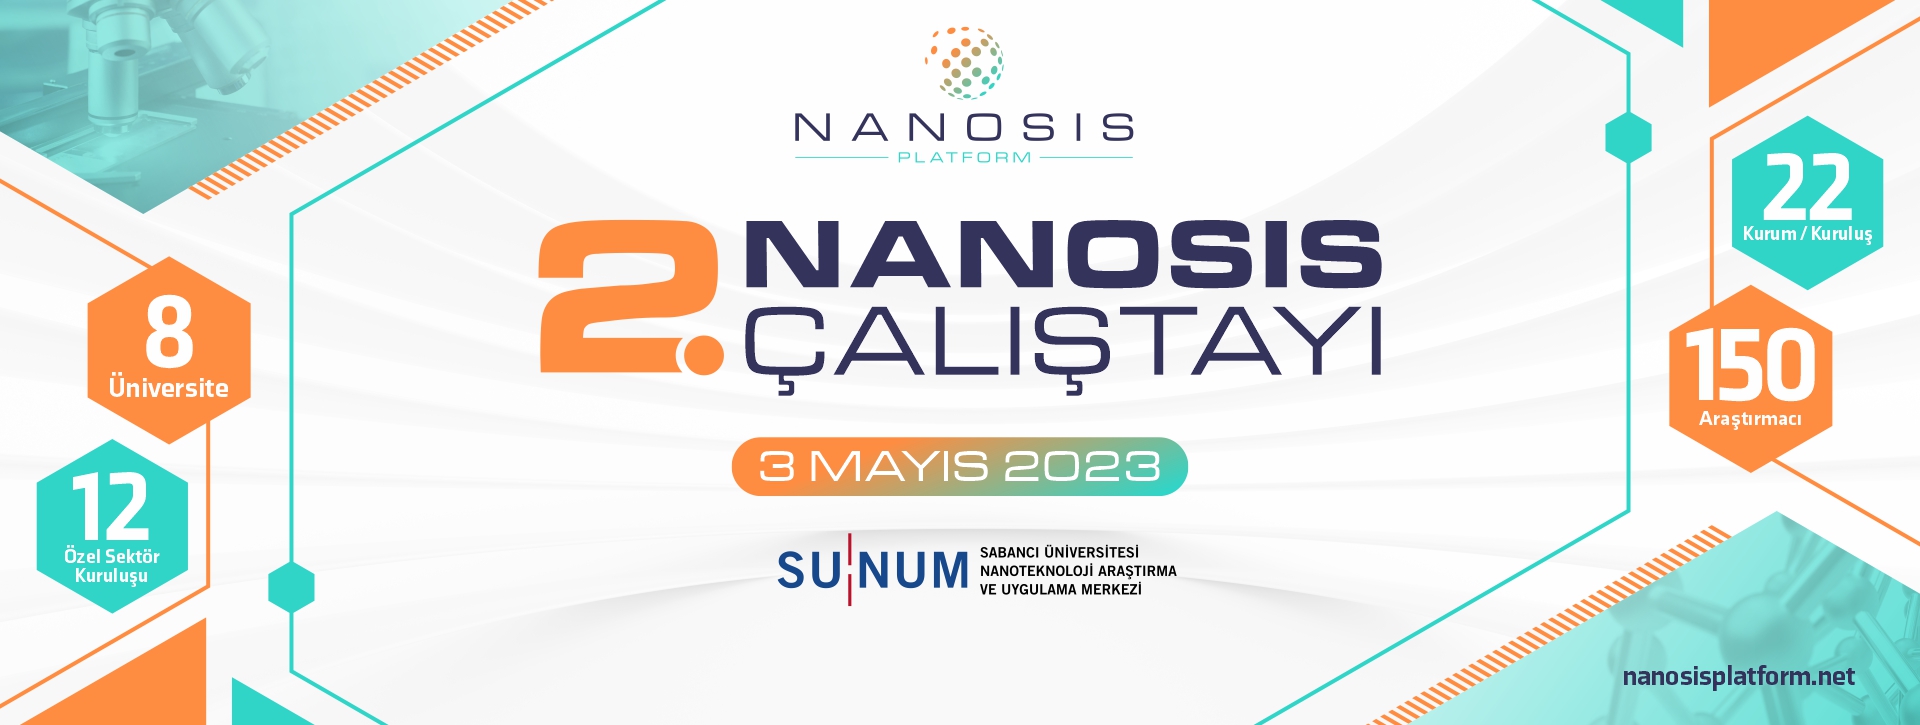 2. NANOSİS Çalıştayı, 3 Mayıs'ta düzenlenecek